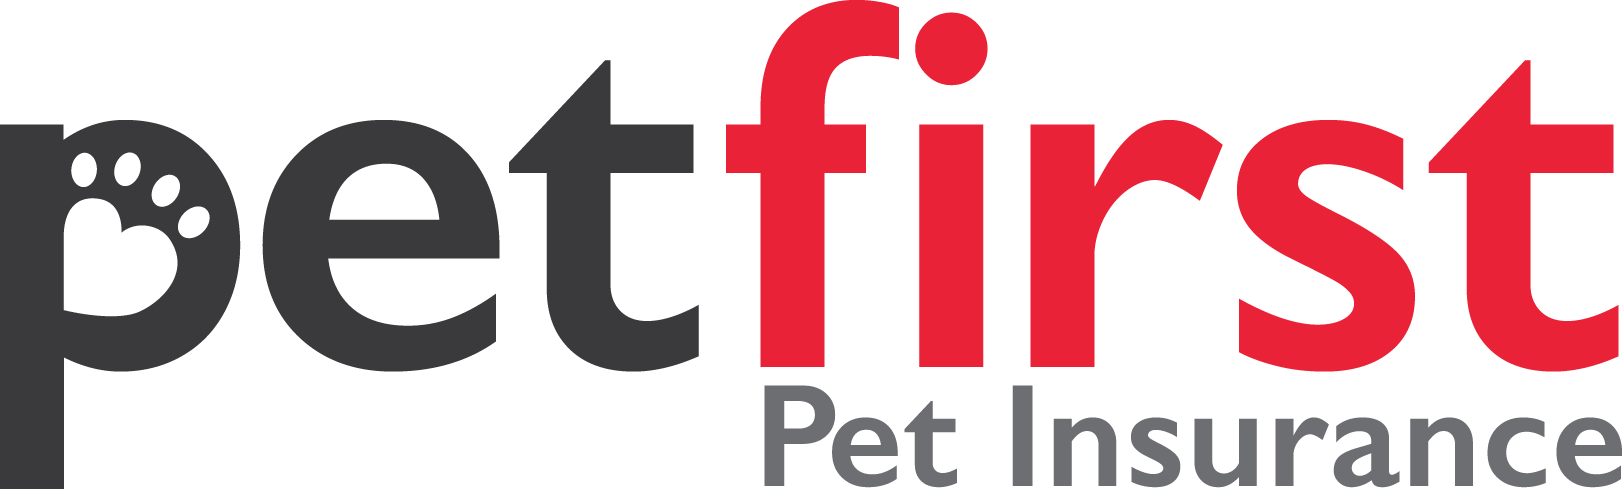 Pet First Pet Insurance